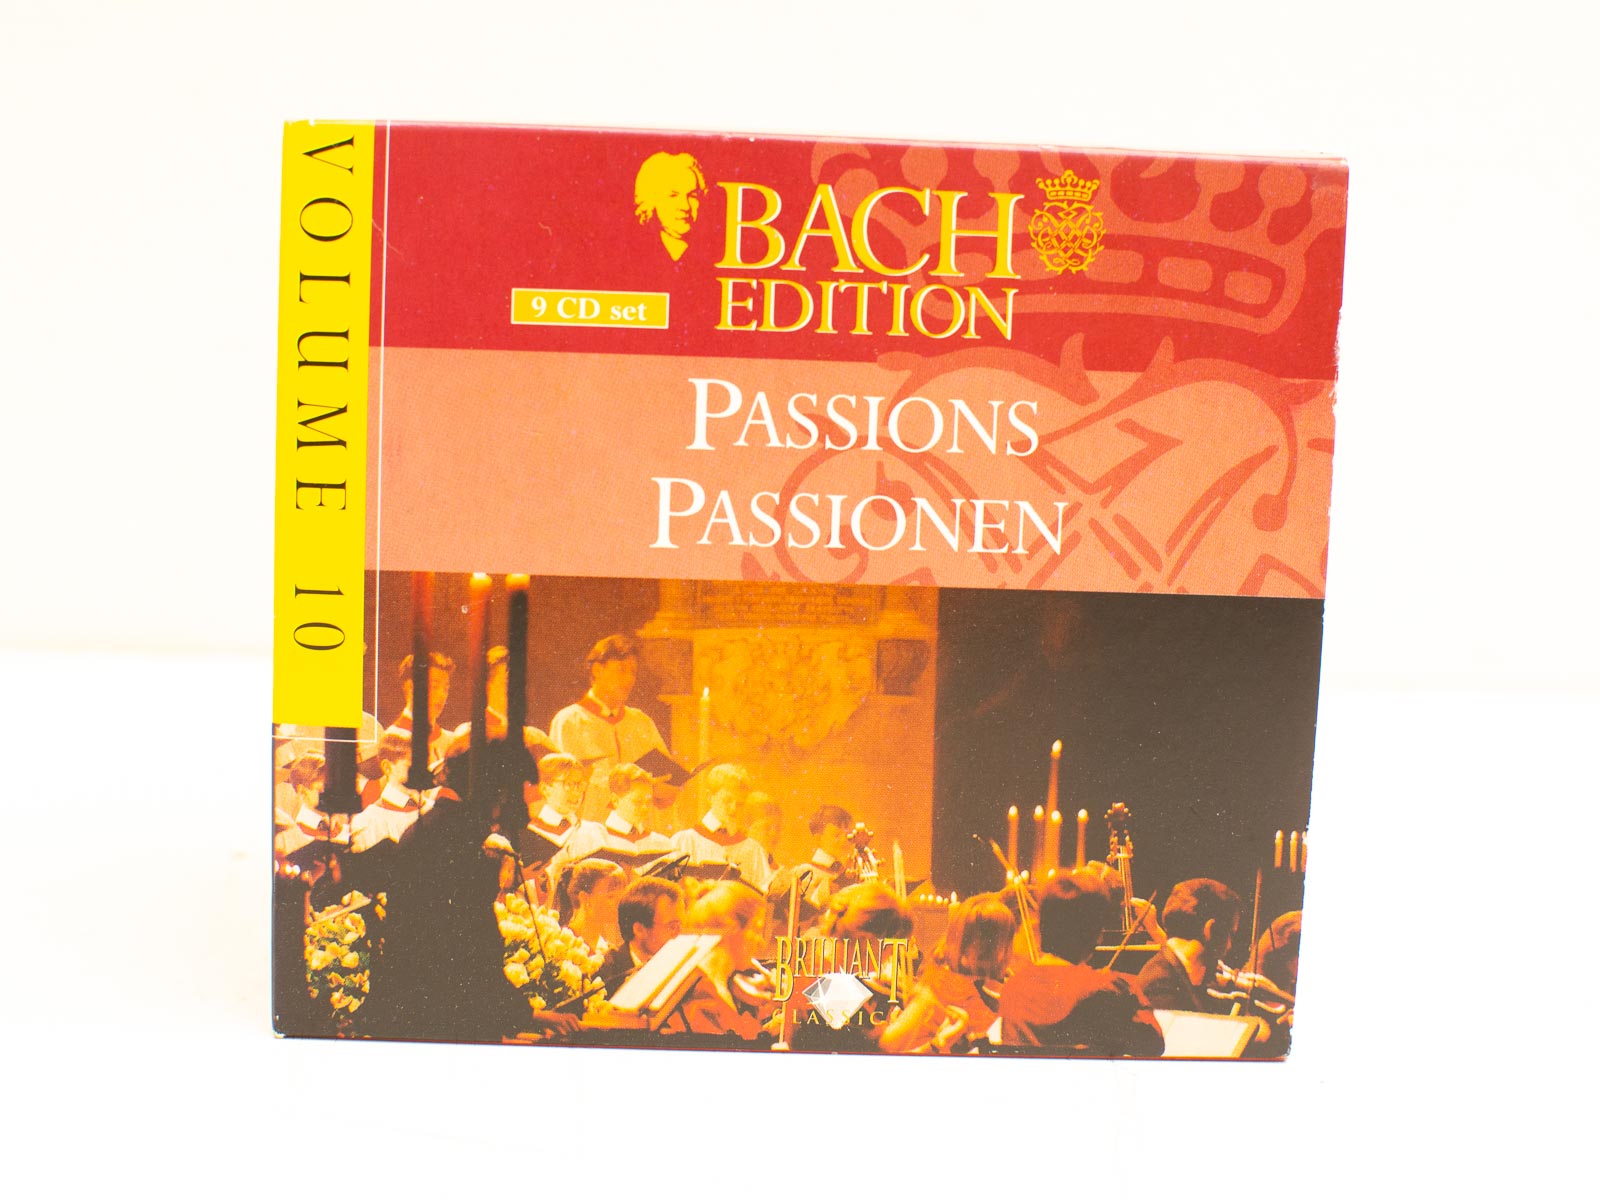 Boch edition passions passionen  32482